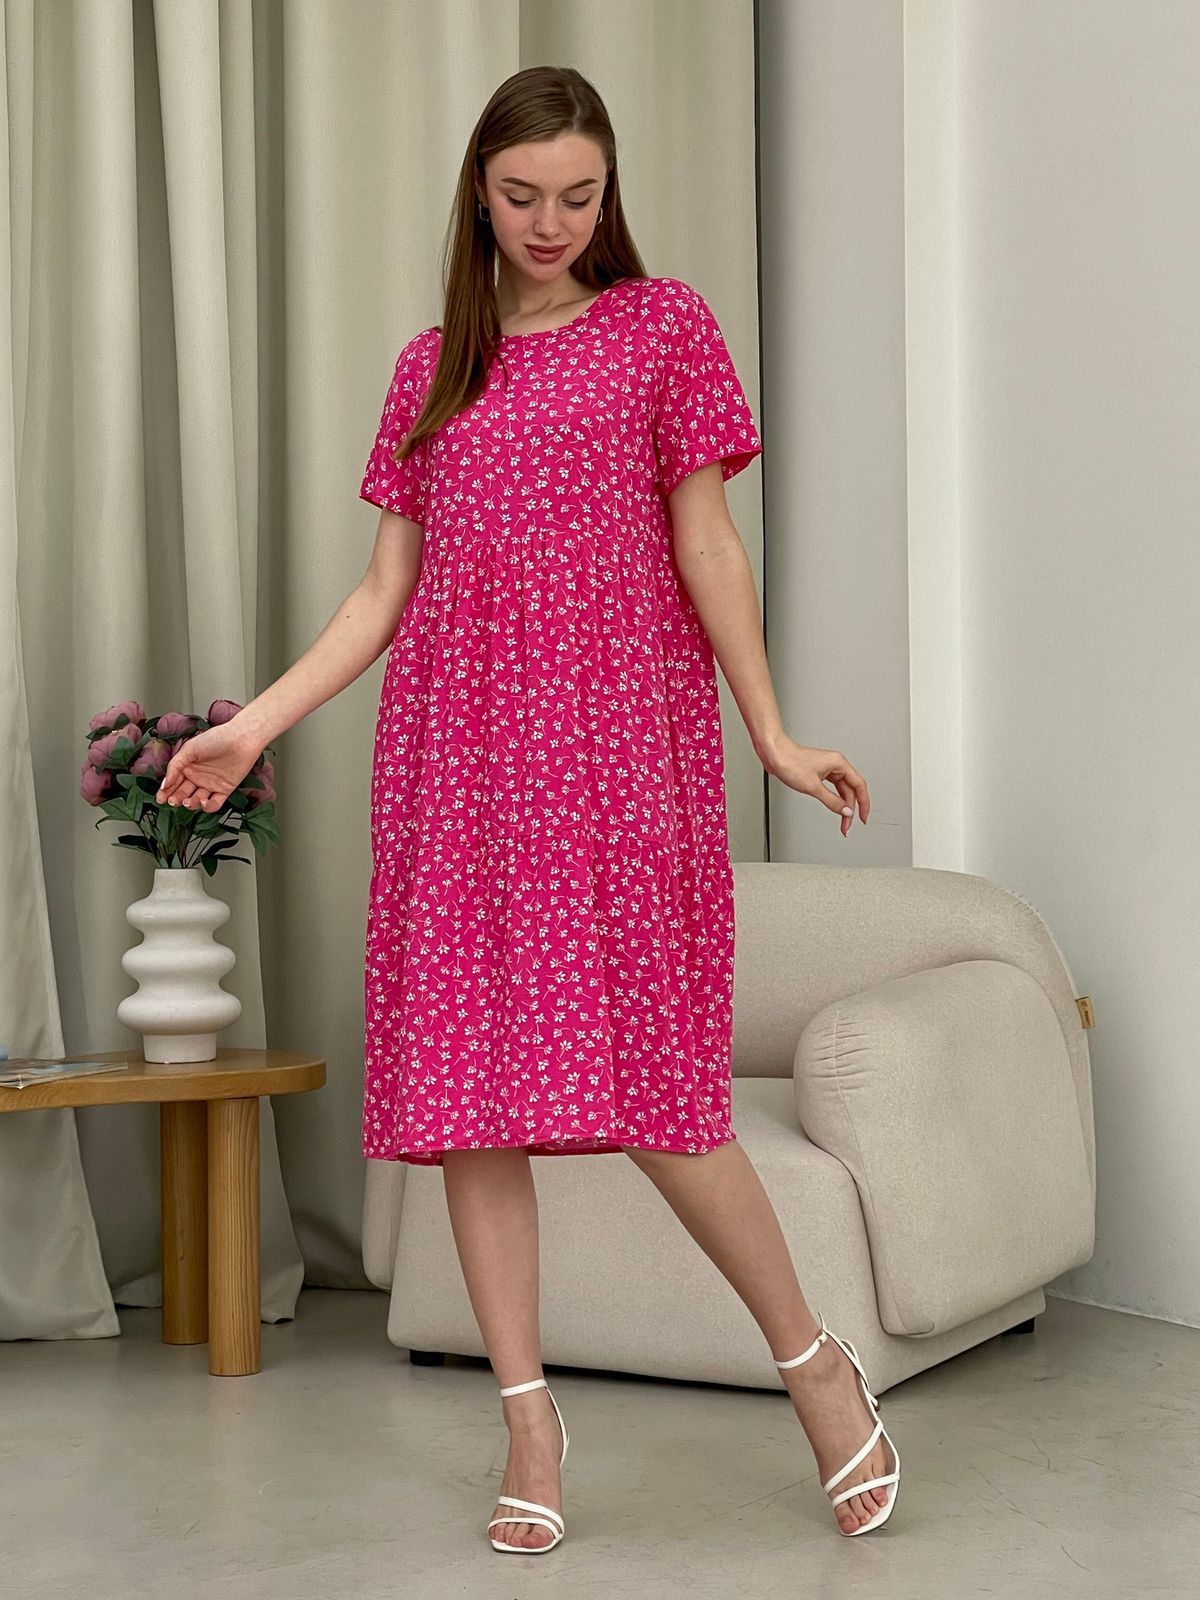 Купить Летнее платье с рюшами в цветочек розовое Merlini Казерта 700001263 размер 42-44 (S-M) в интернет-магазине